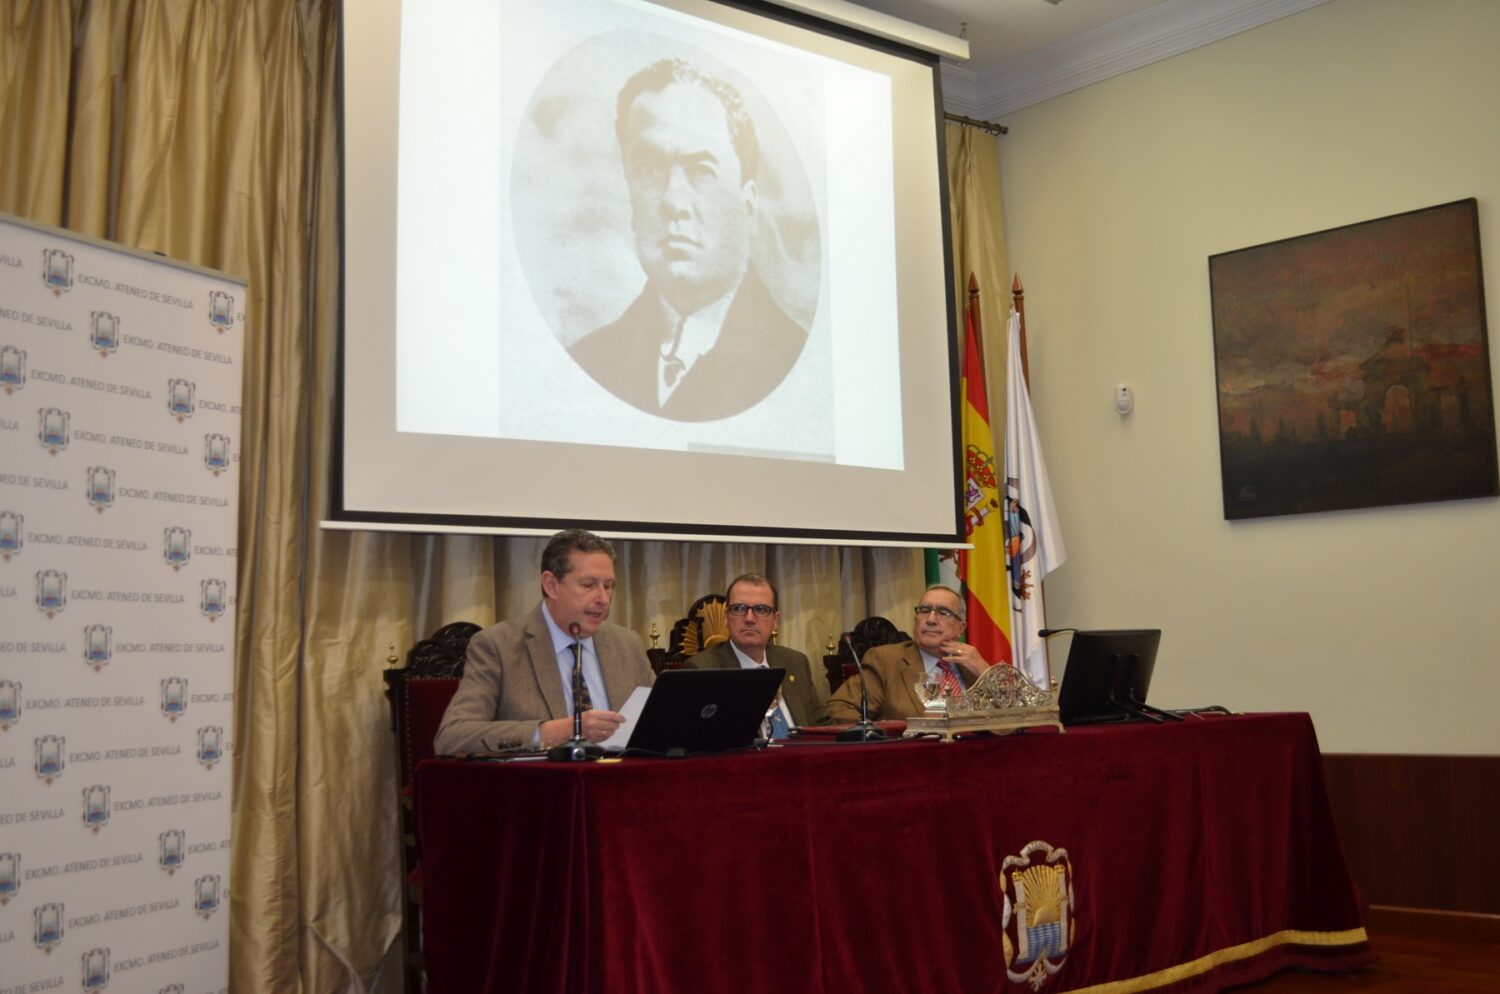 D. Miguel Cruz, D. José Vallecillo y D. Rogelio Reyes durante la apertura del ciclo literario